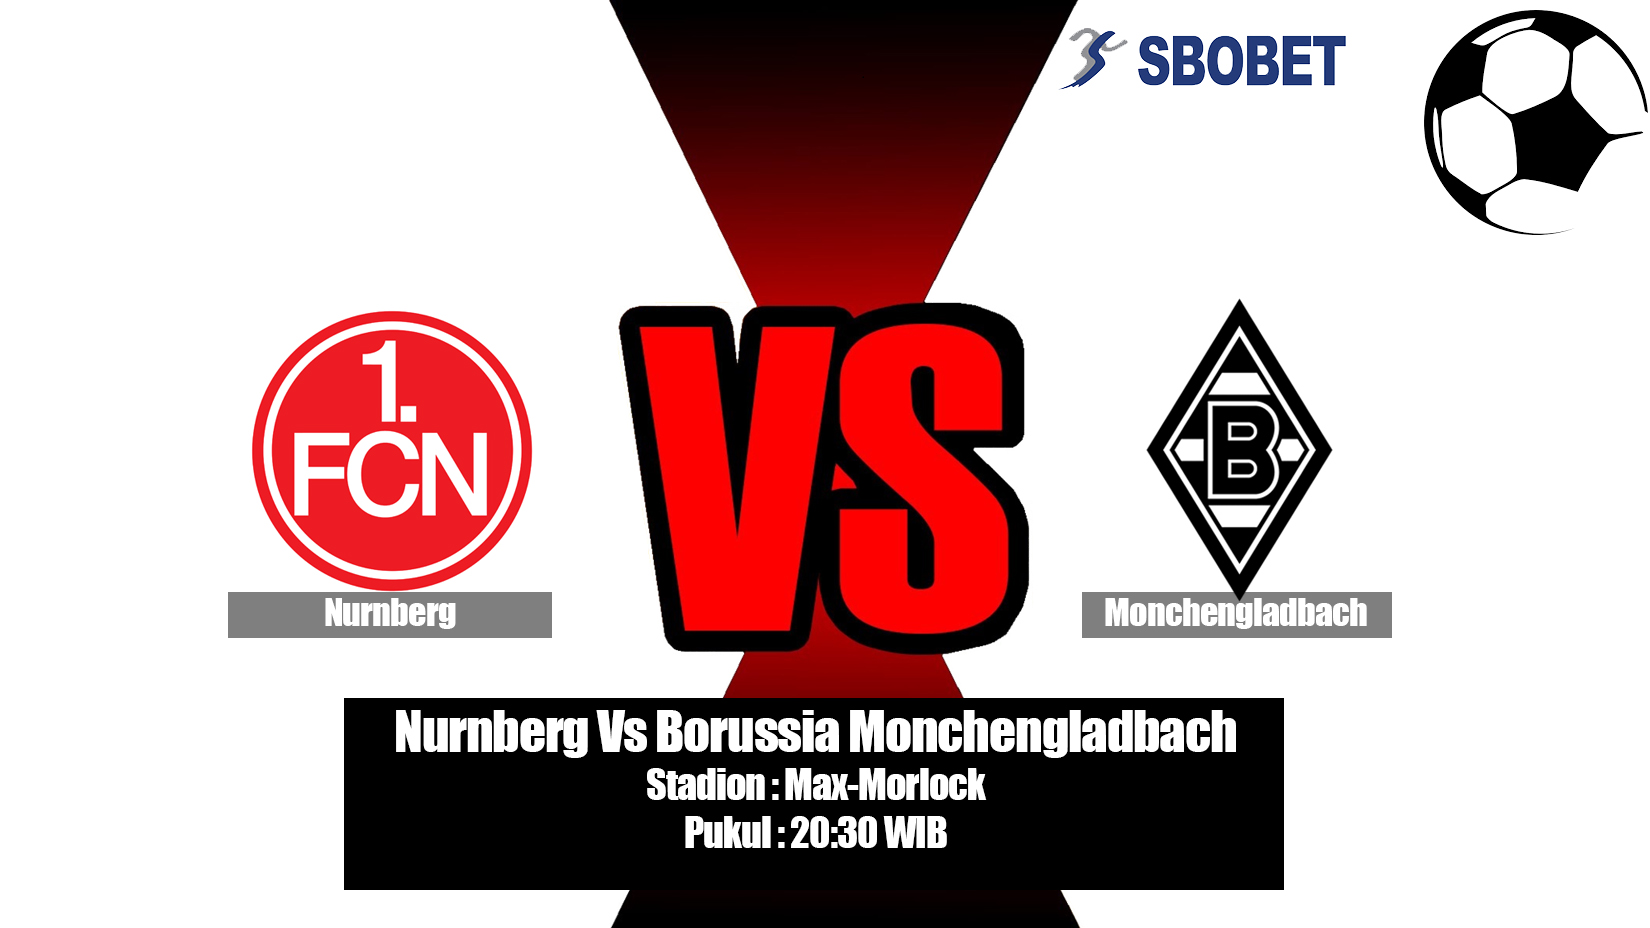 Prediksi Bola Nurnberg Vs Borussia Monchengladbach 11 Mei 2019